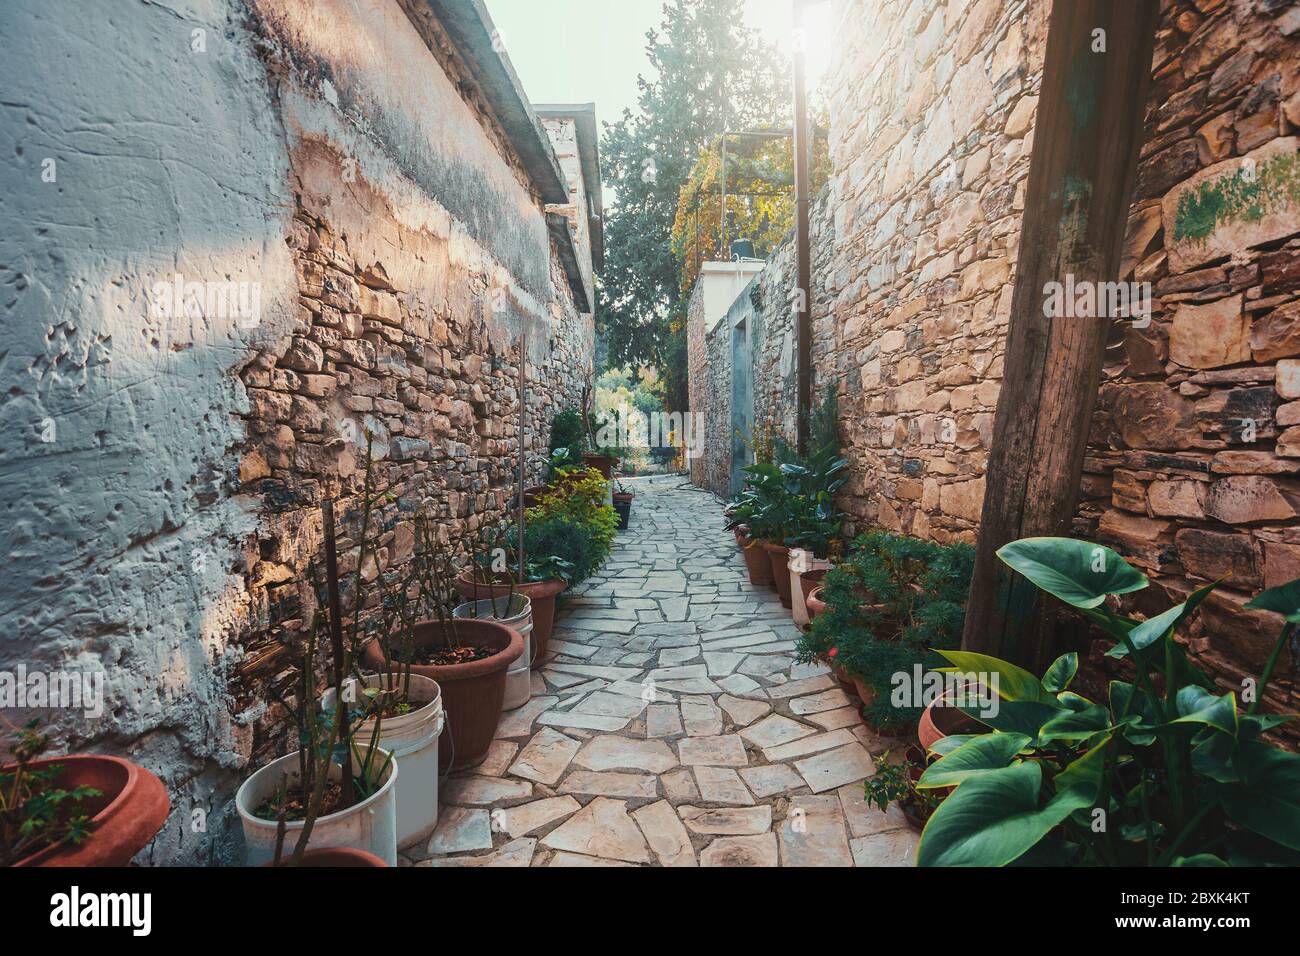 Lefkara villaggio con strade strette, situato in montagna, Cipro. Antico luogo turistico storico dell'isola. Foto Stock